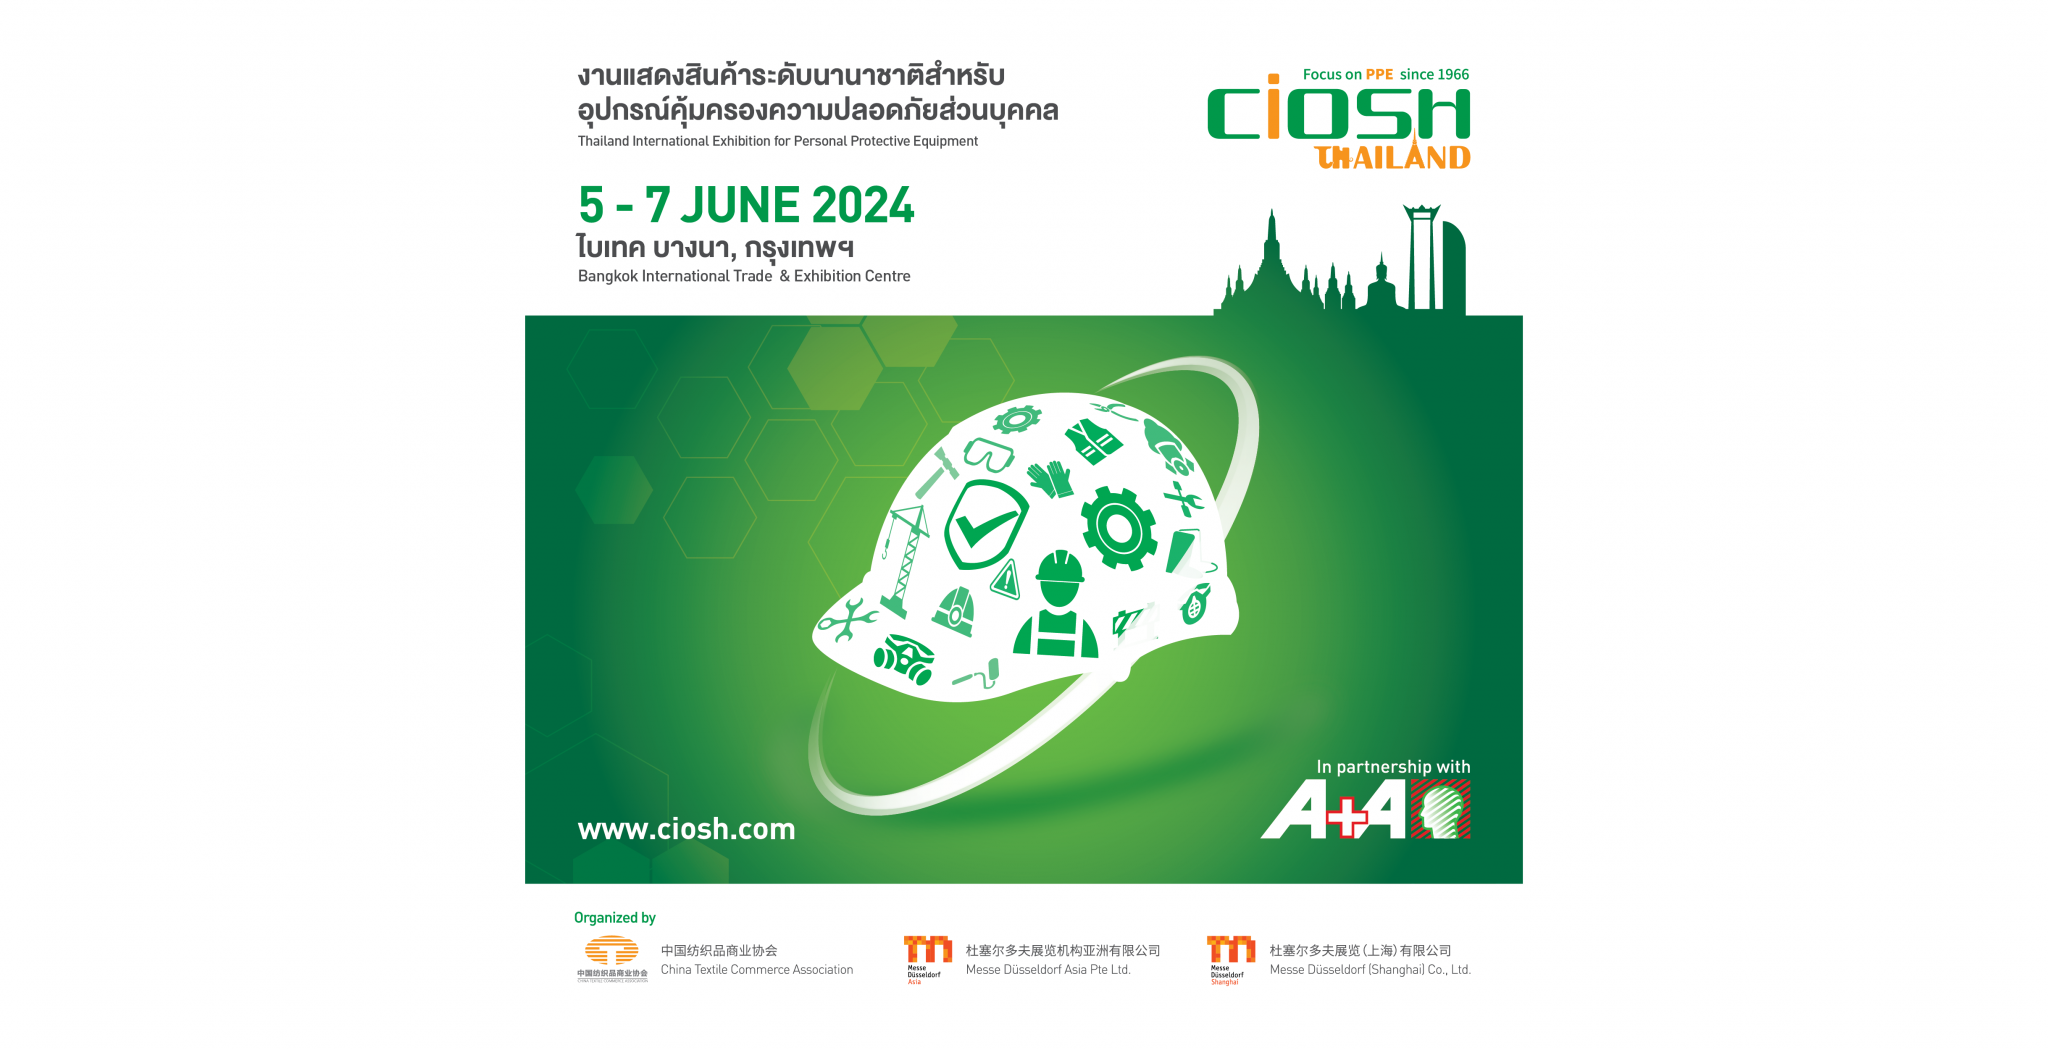 CIOSH Thailand 2024 Bangkok International Trade & Exhibition Centre